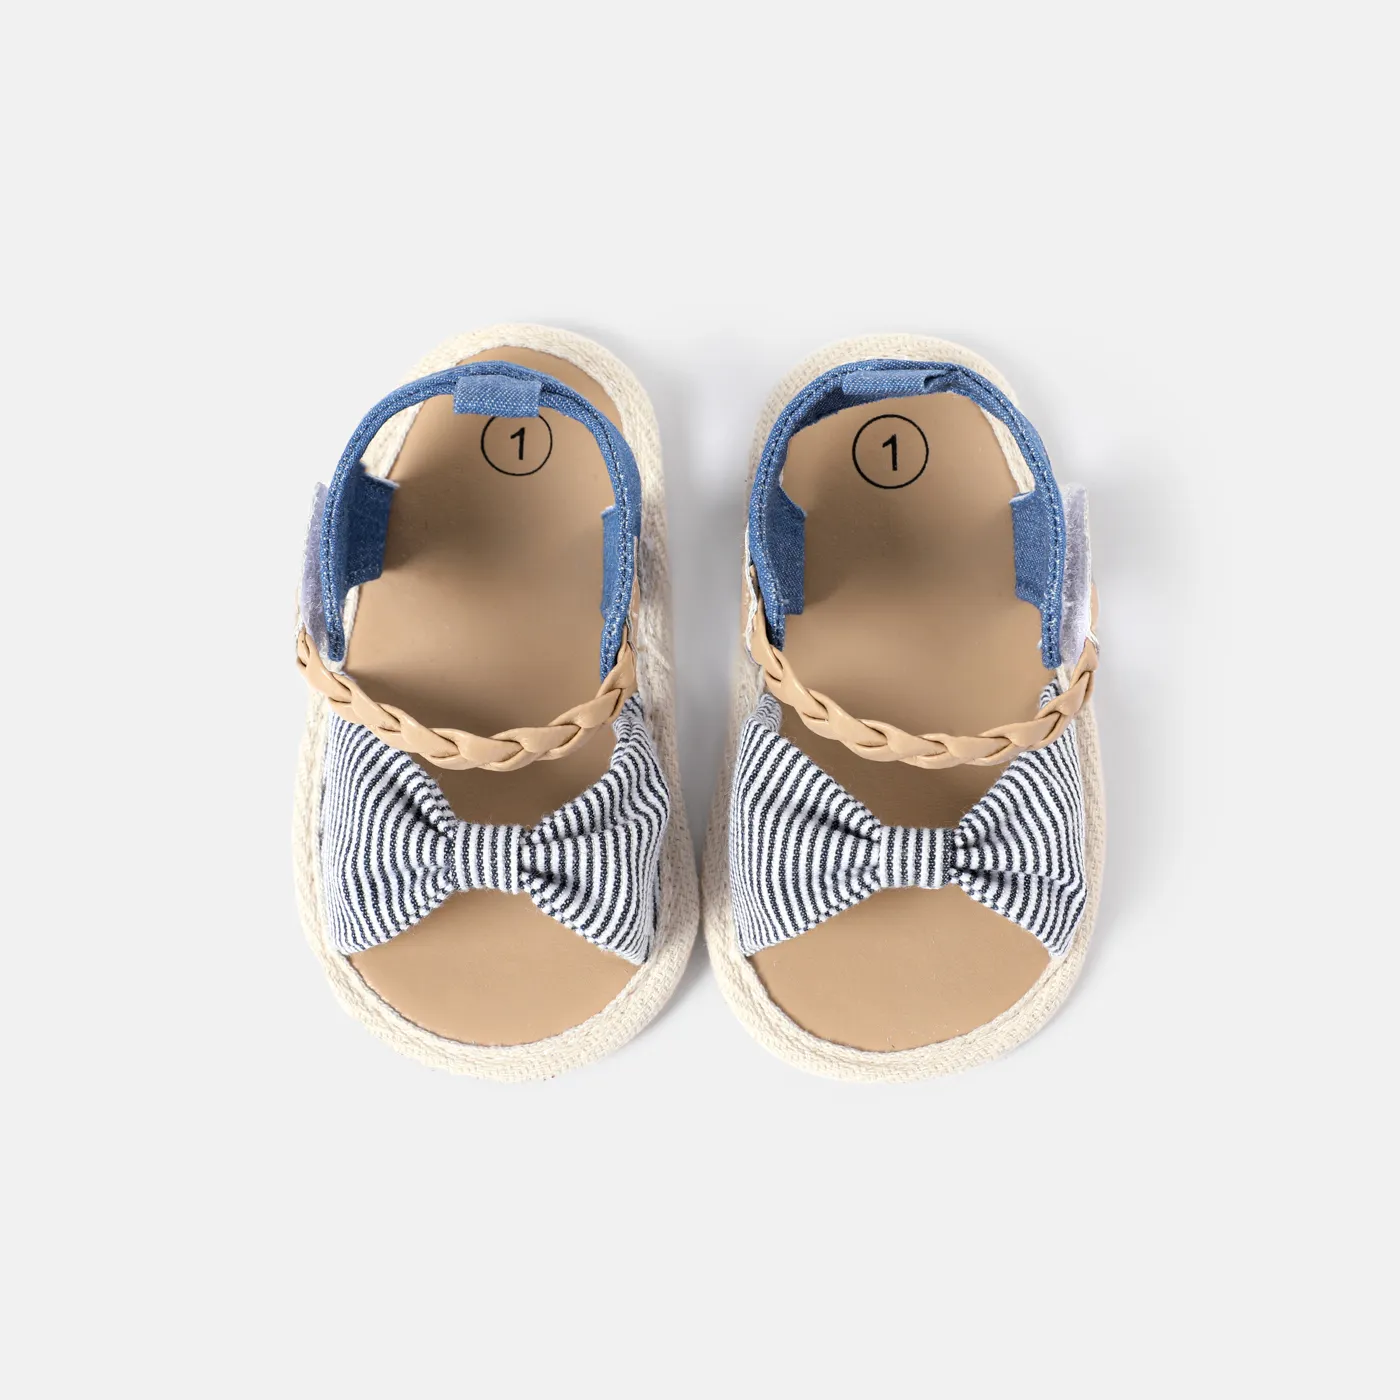 嬰兒 女 休閒 條紋 學步鞋